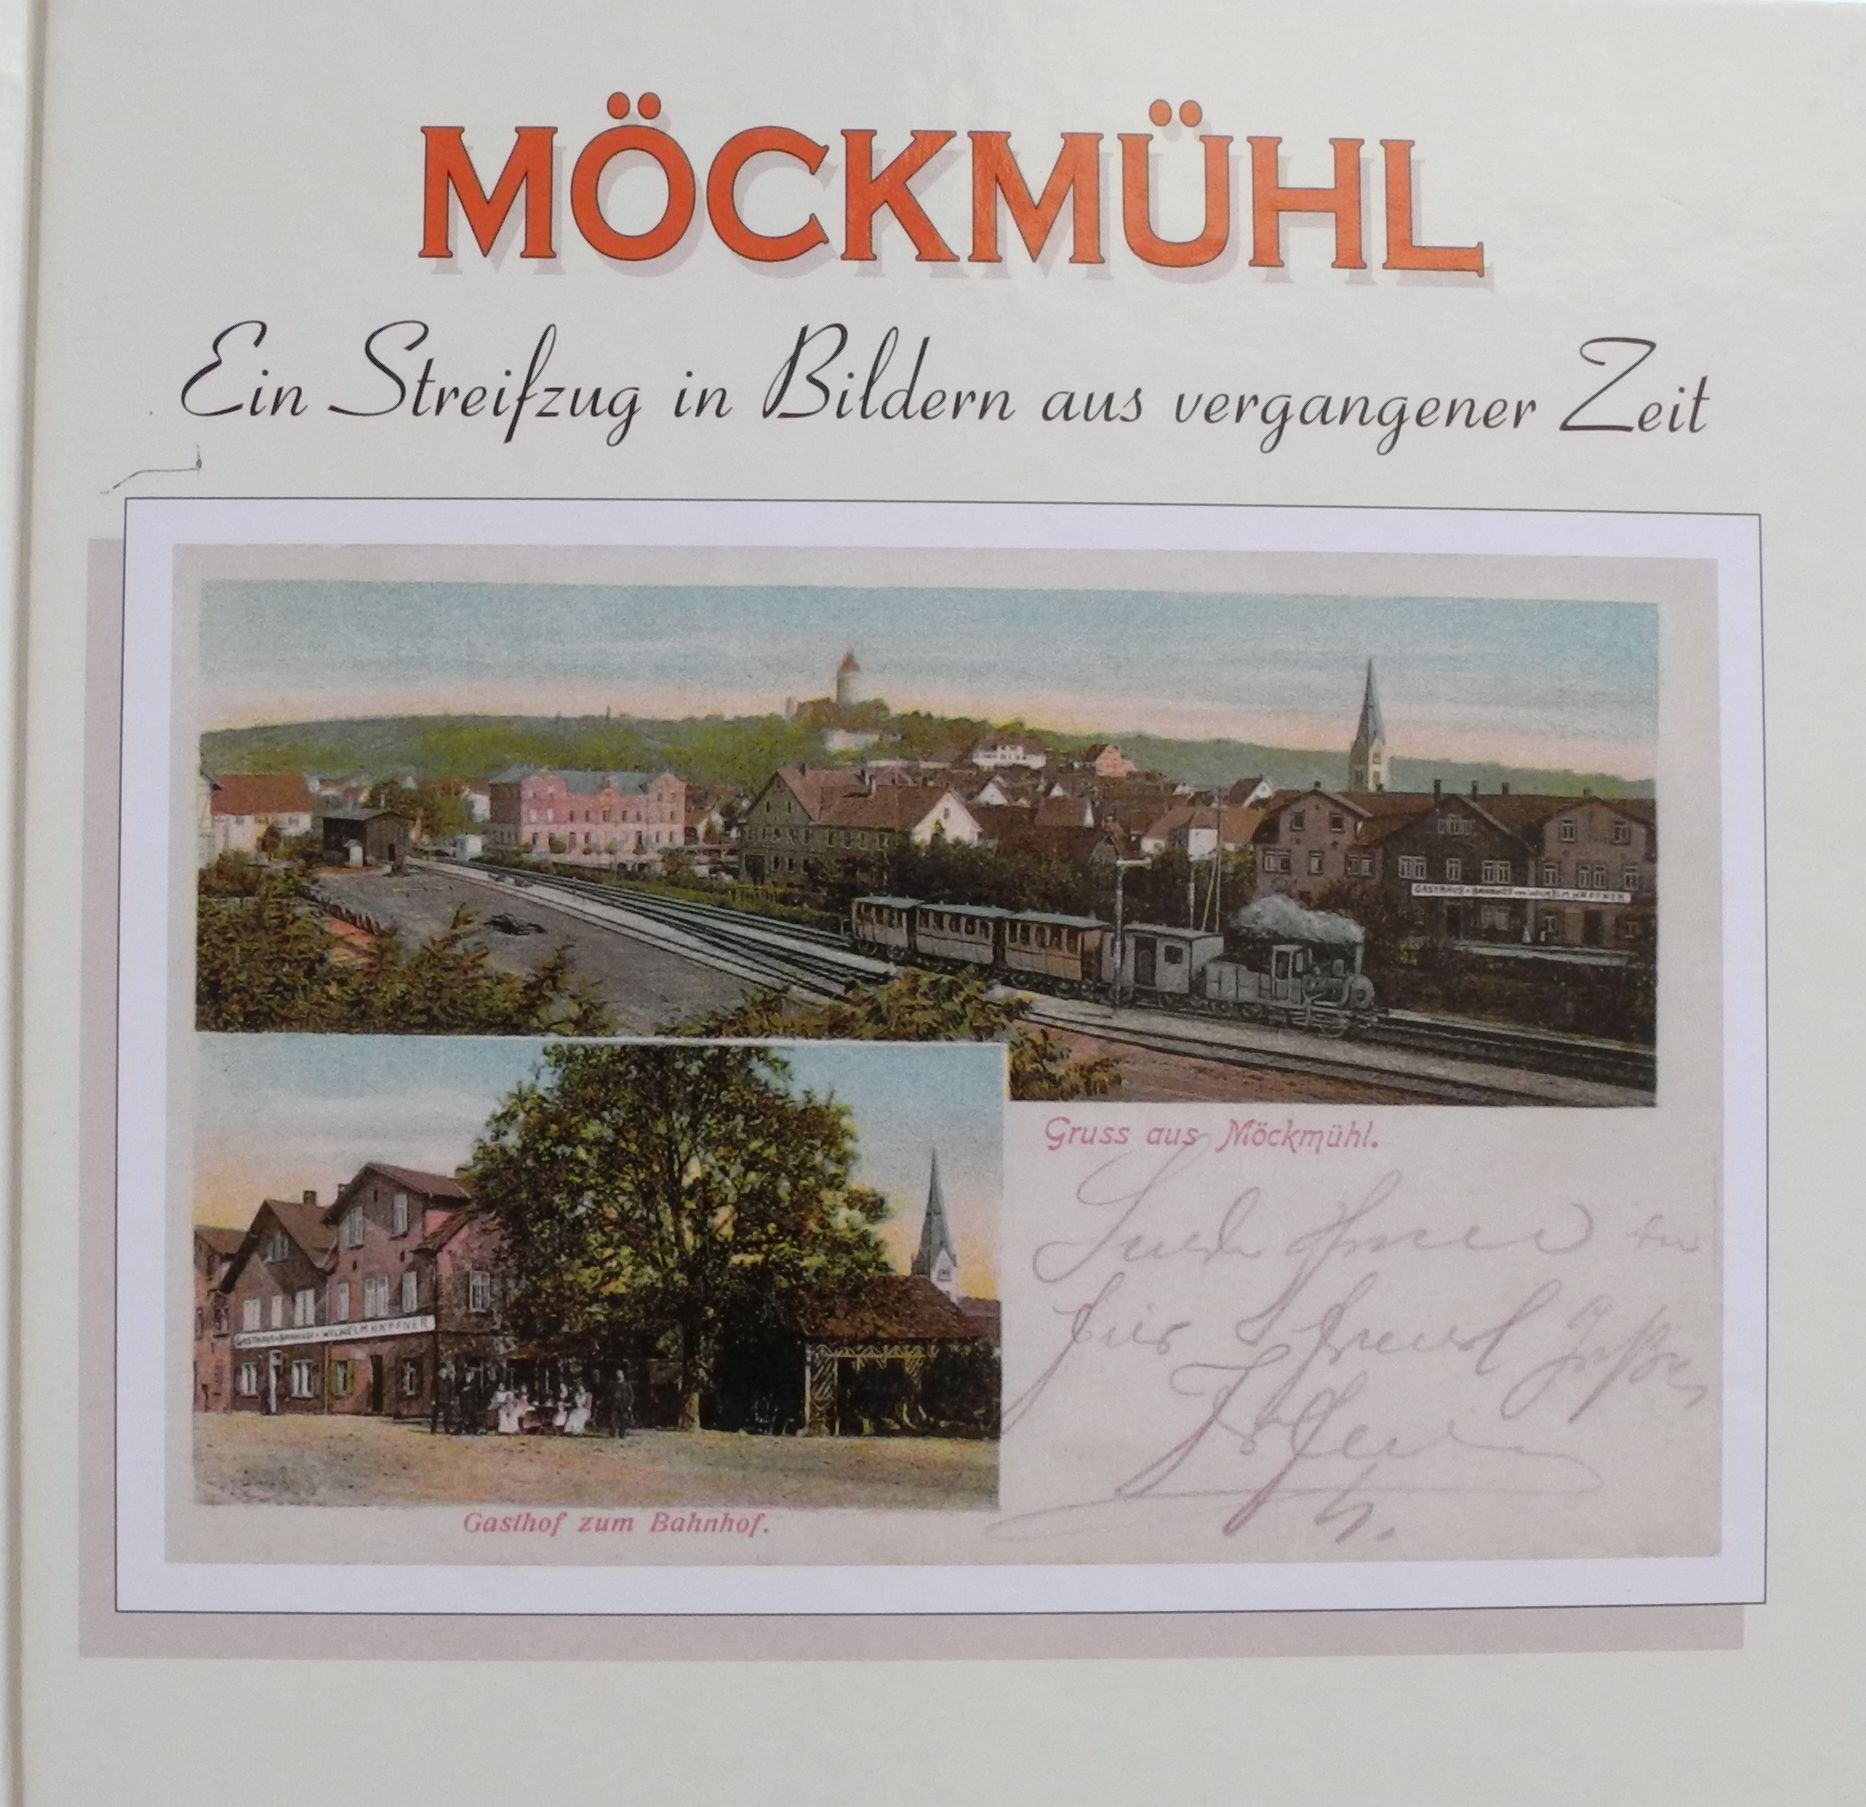  Möckmühl - Ein Streifzug in Bildern aus vergangener Zeit, Band I 